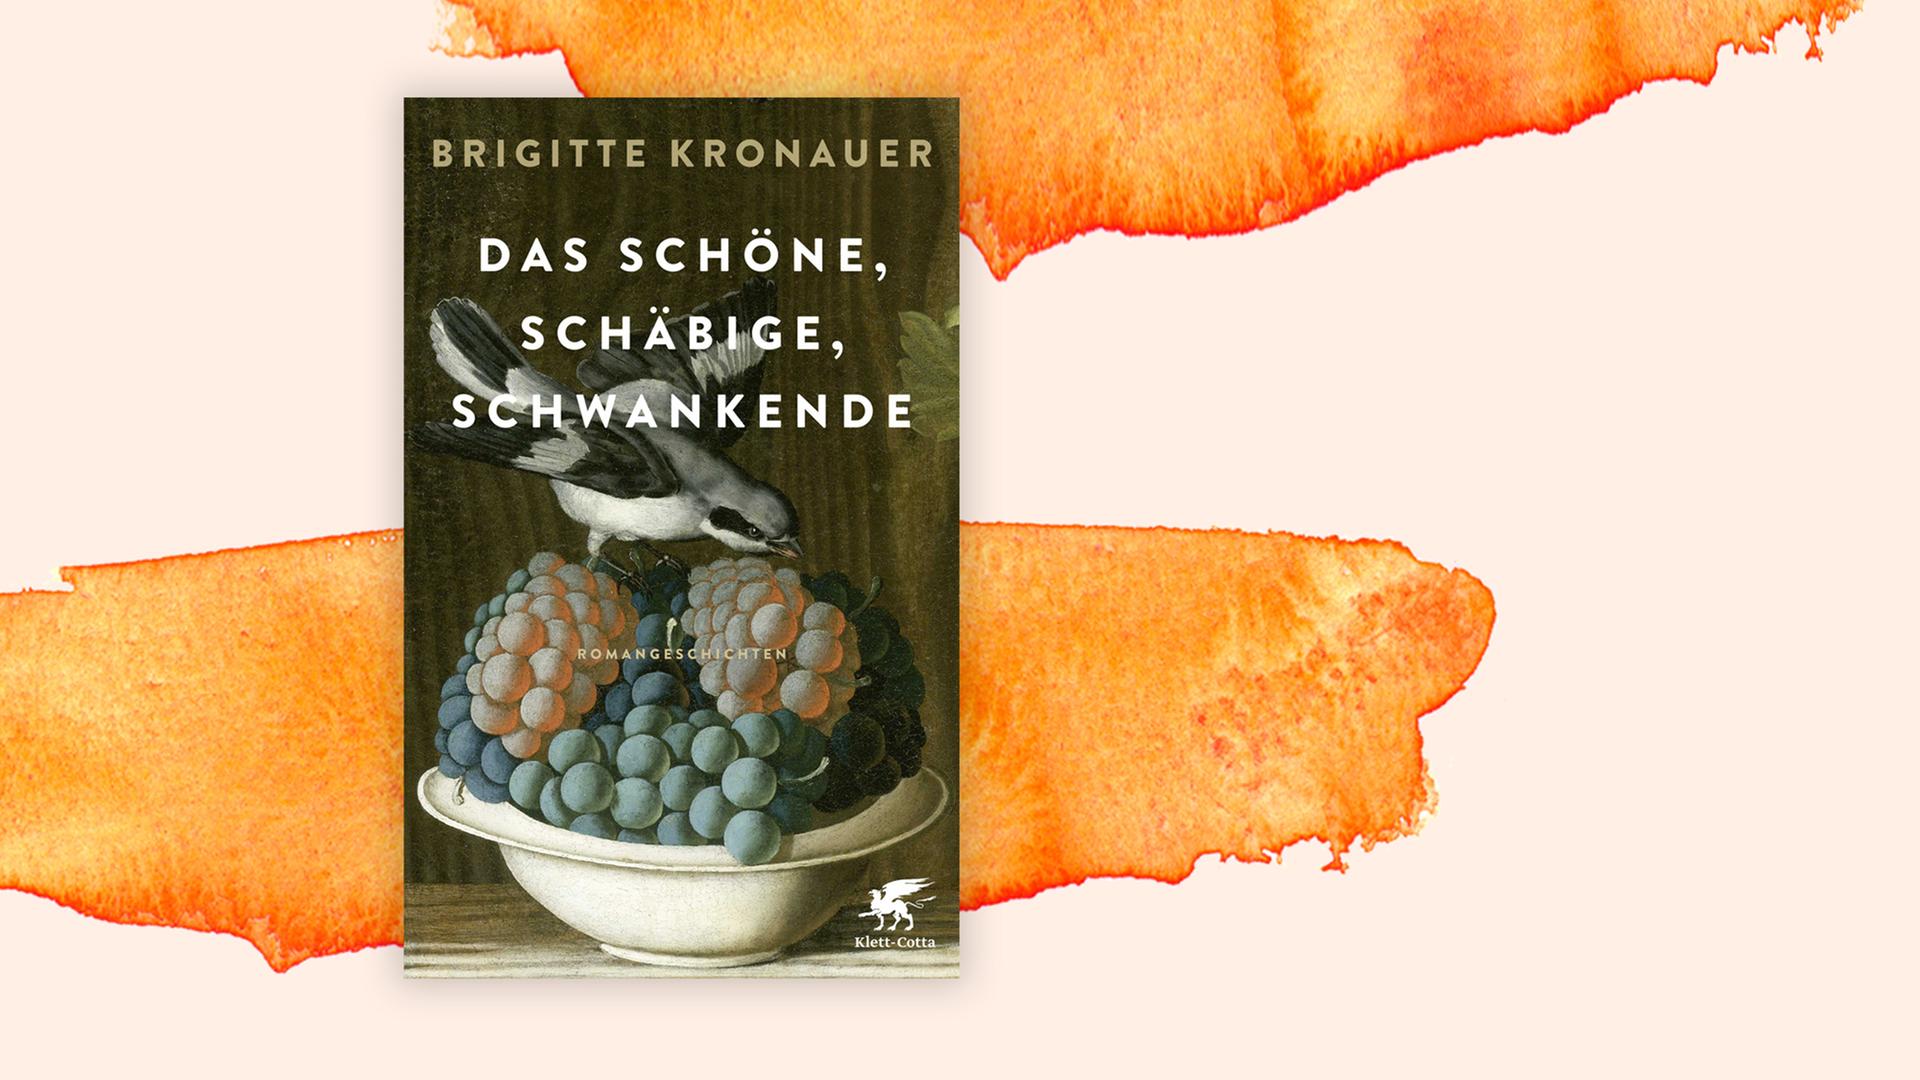 Buchcover zu "Das Schöne, Schäbige, Schwankende" von Brigitte Kronauer.